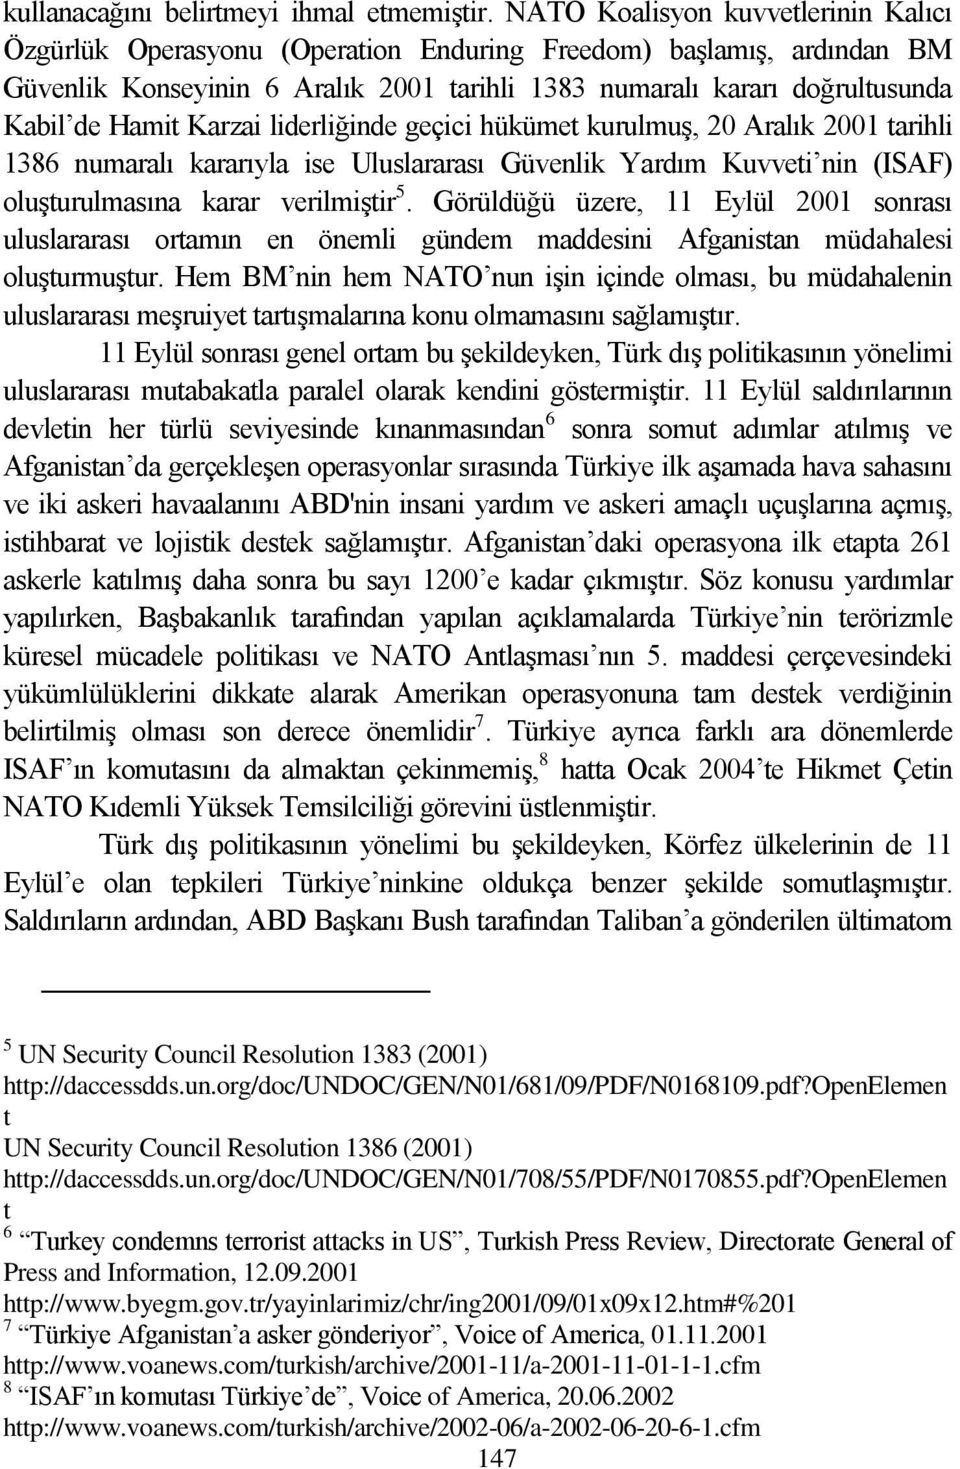 Karzai liderliğinde geçici hükümet kurulmuģ, 20 Aralık 2001 tarihli 1386 numaralı kararıyla ise Uluslararası Güvenlik Yardım Kuvveti nin (ISAF) oluģturulmasına karar verilmiģtir 5.